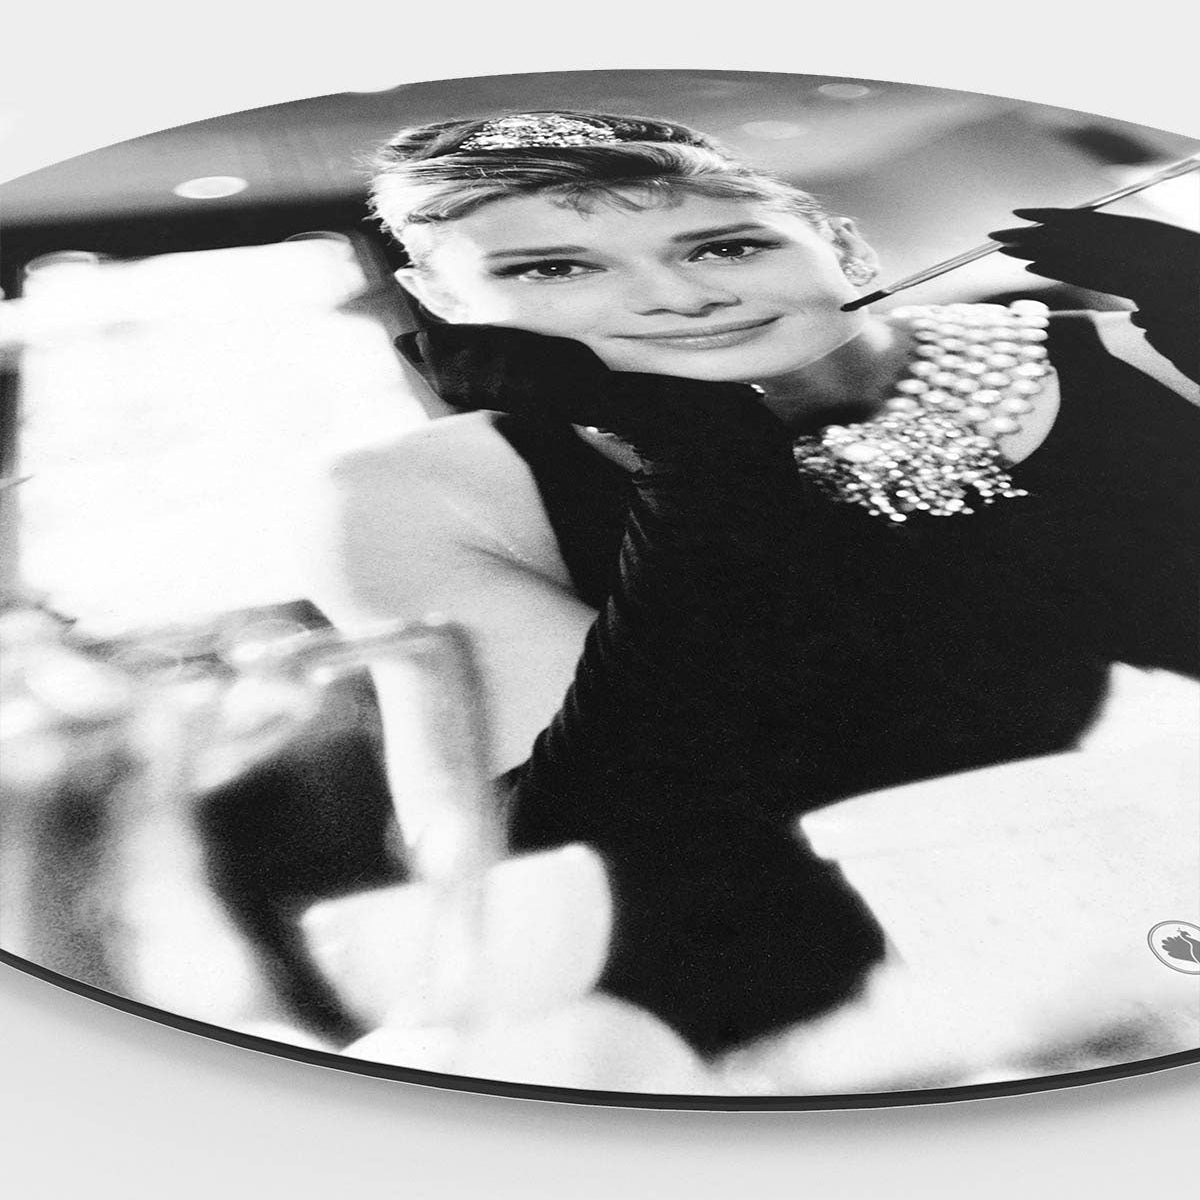 Zijkant van een muurcirkel met daarop Audrey Hepburn met een sigaret in haar hand aan het ontbijt.